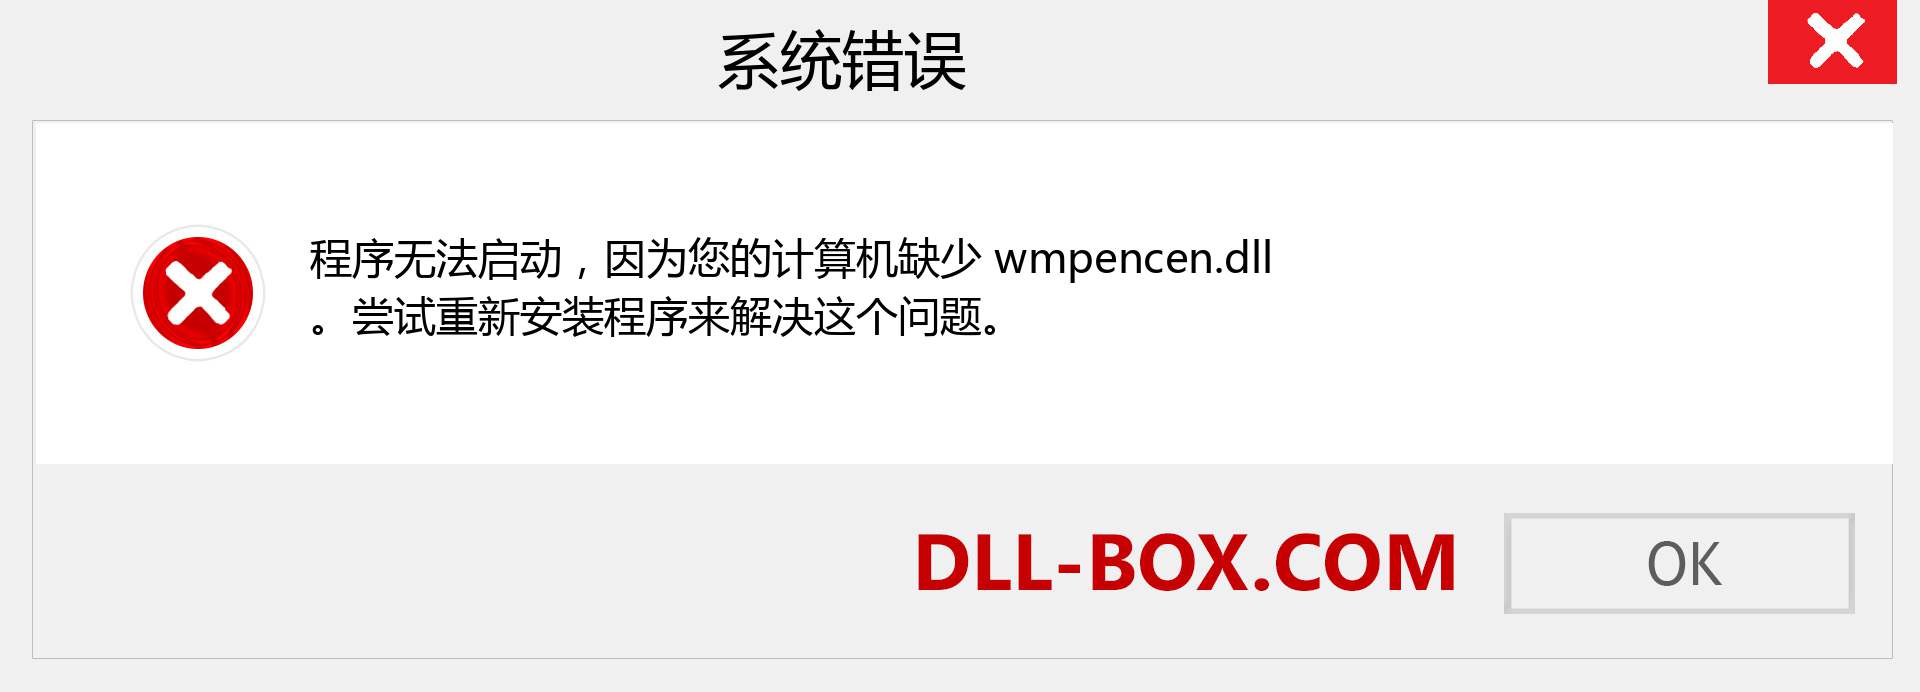 wmpencen.dll 文件丢失？。 适用于 Windows 7、8、10 的下载 - 修复 Windows、照片、图像上的 wmpencen dll 丢失错误